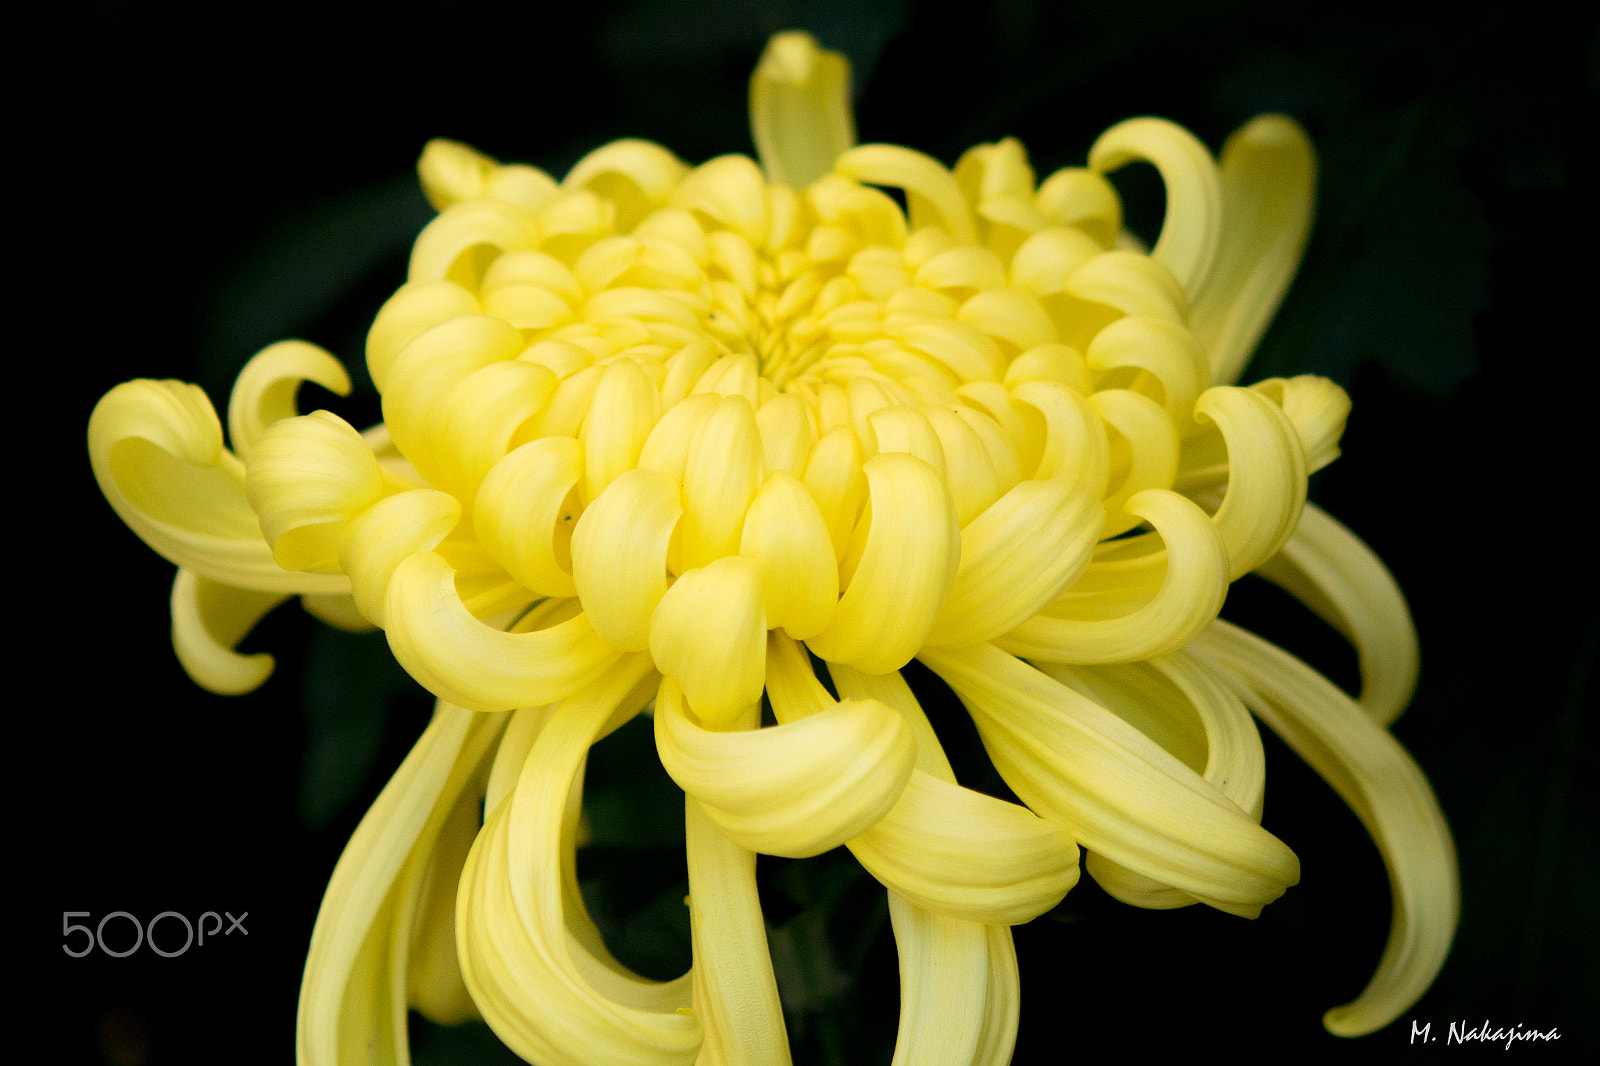 Nikon 1 V3 sample photo. Chrysanthemum -1 photography